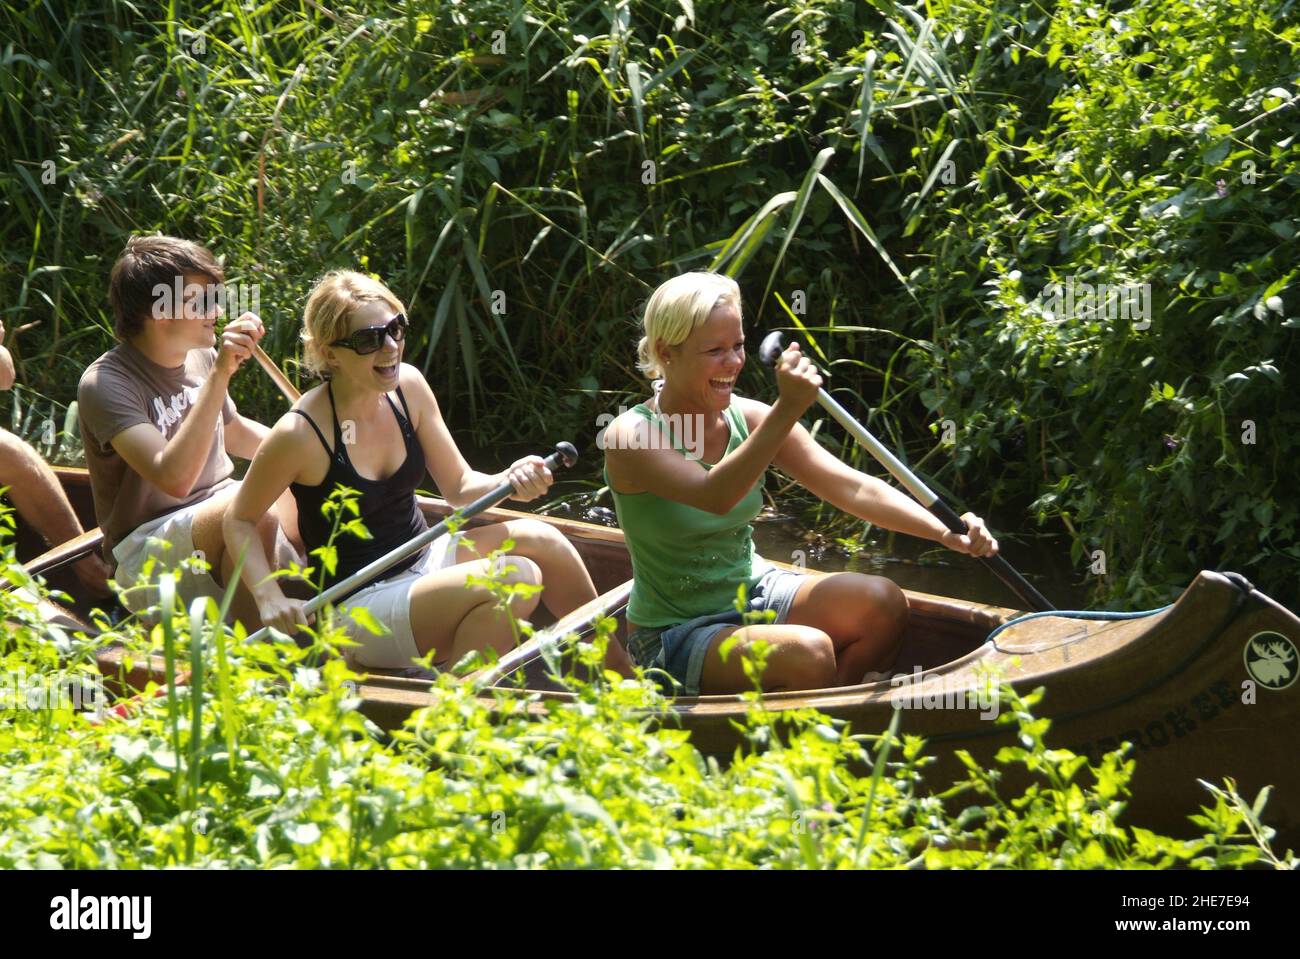 Jugendliche im Kanu paddeln durch enges Gewässer im Landkreis Celle, Niedersachsen, Deutschland, Europa | Junge Gruppe von Menschen, die auf einem kleinen Br Stockfoto